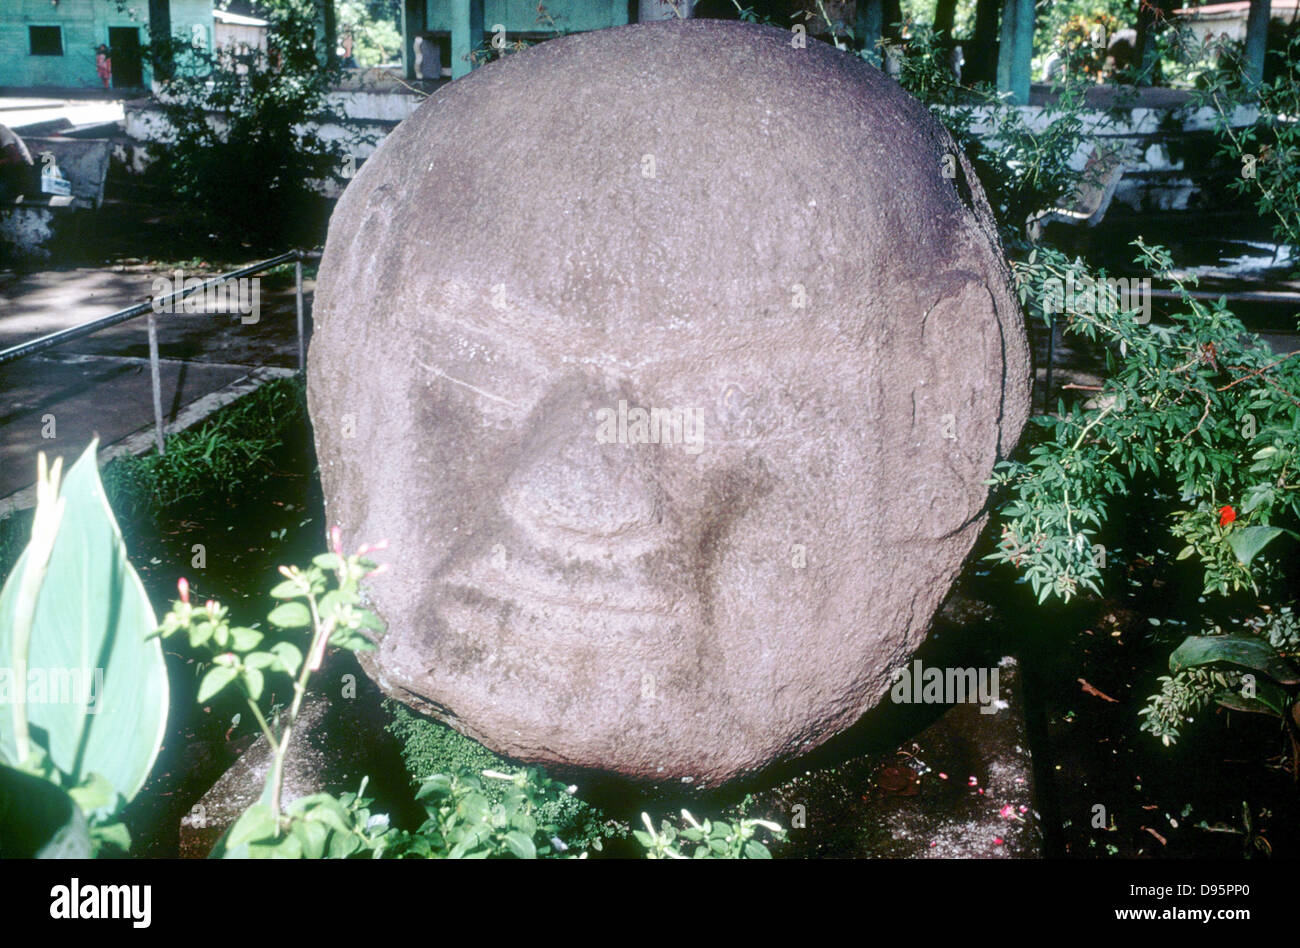 Guatemala. Pre-Columbian, Pre-Classic (1500-100 BC) Carved monolithic head from Monte Alto. Stock Photo